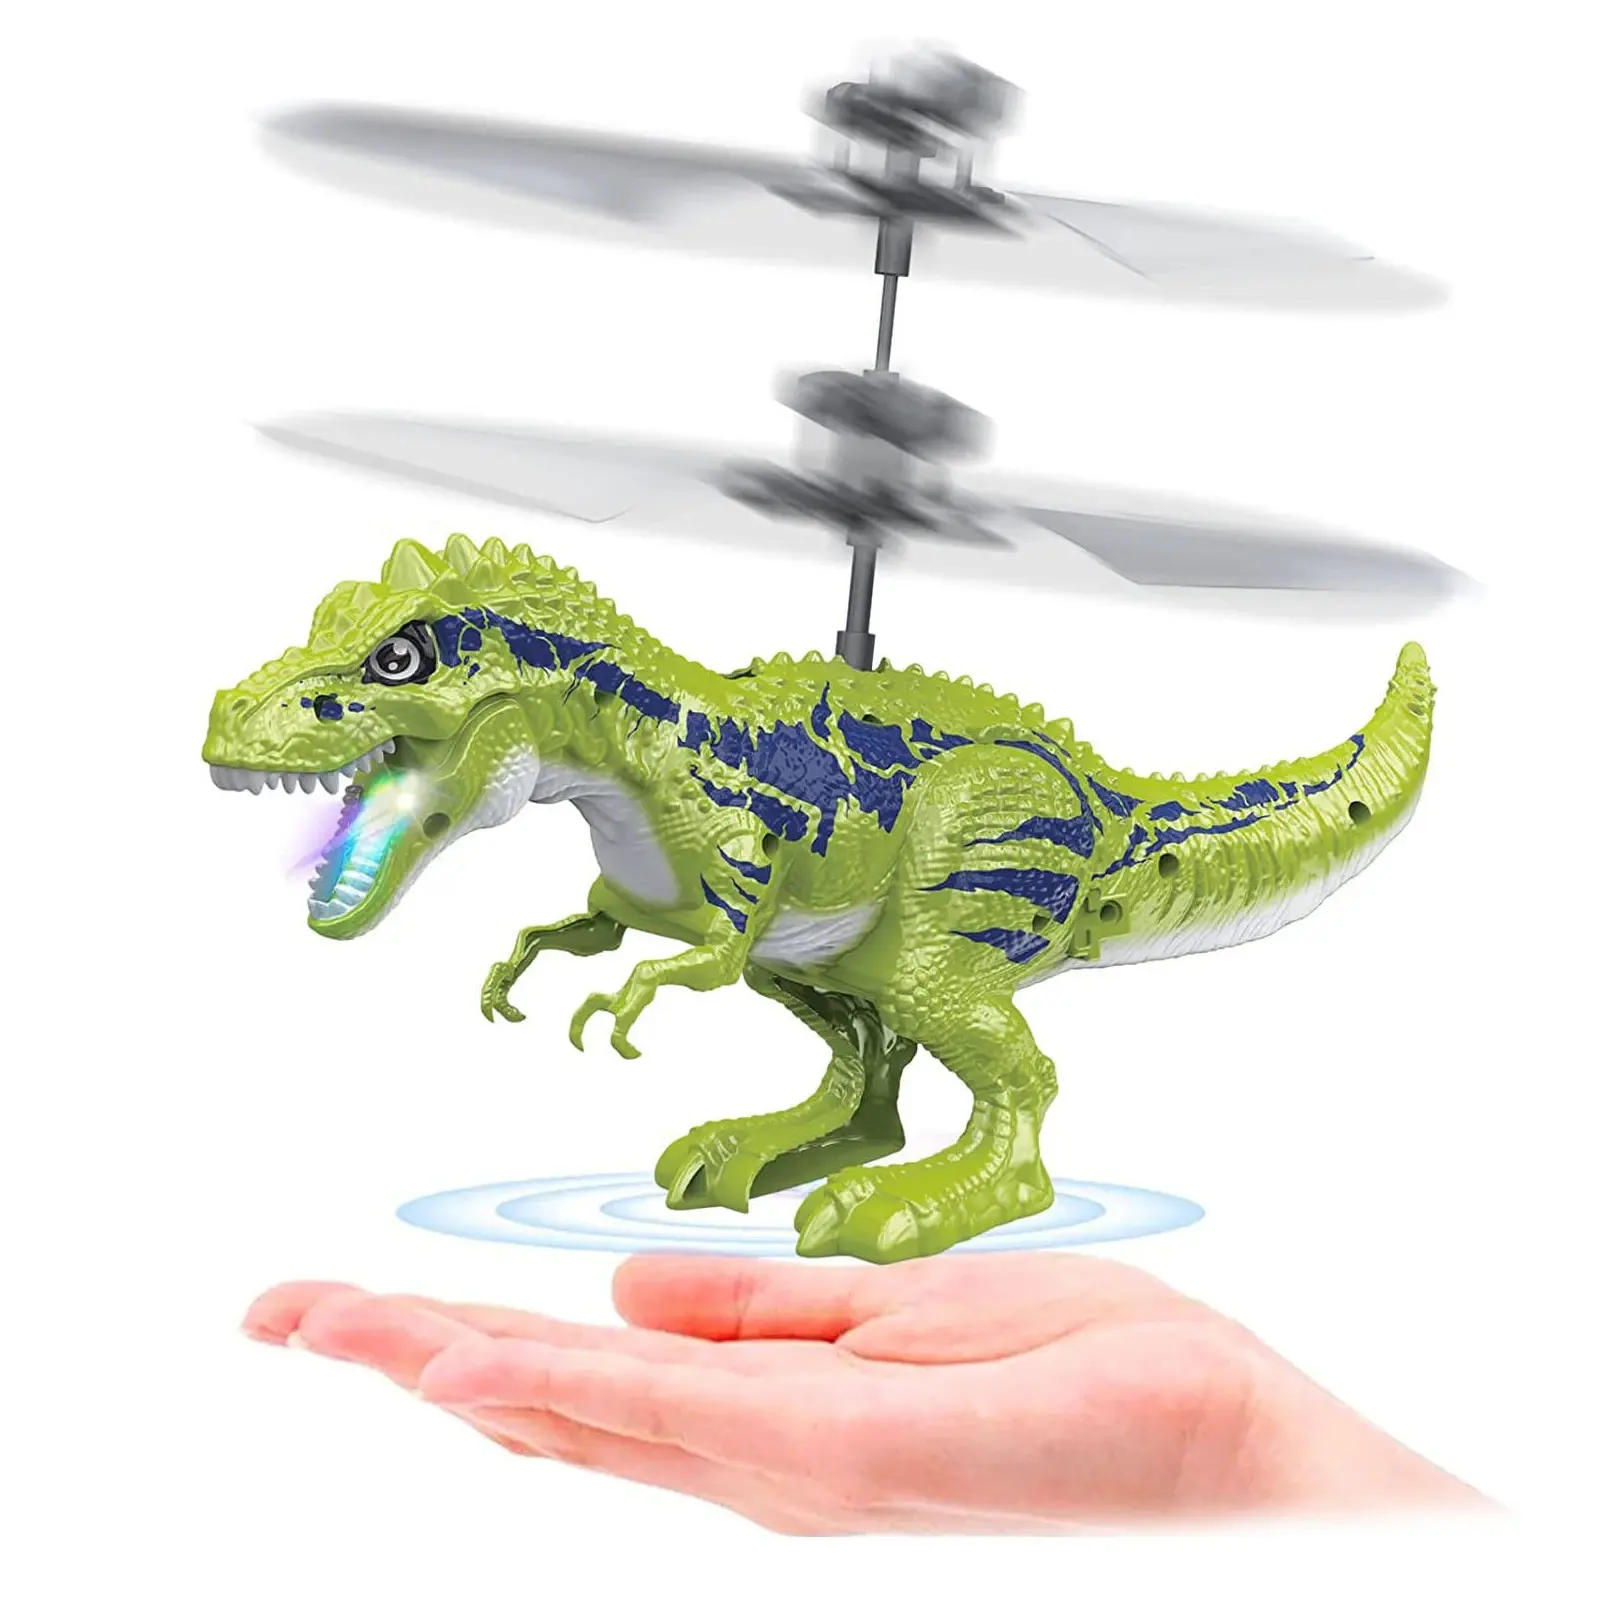 JELO 새로운 디자인 충전식 적외선 리모컨 LED 라이트 장난감 헬리콥터 비행 공룡 모양 무인 항공기 어린이 장난감